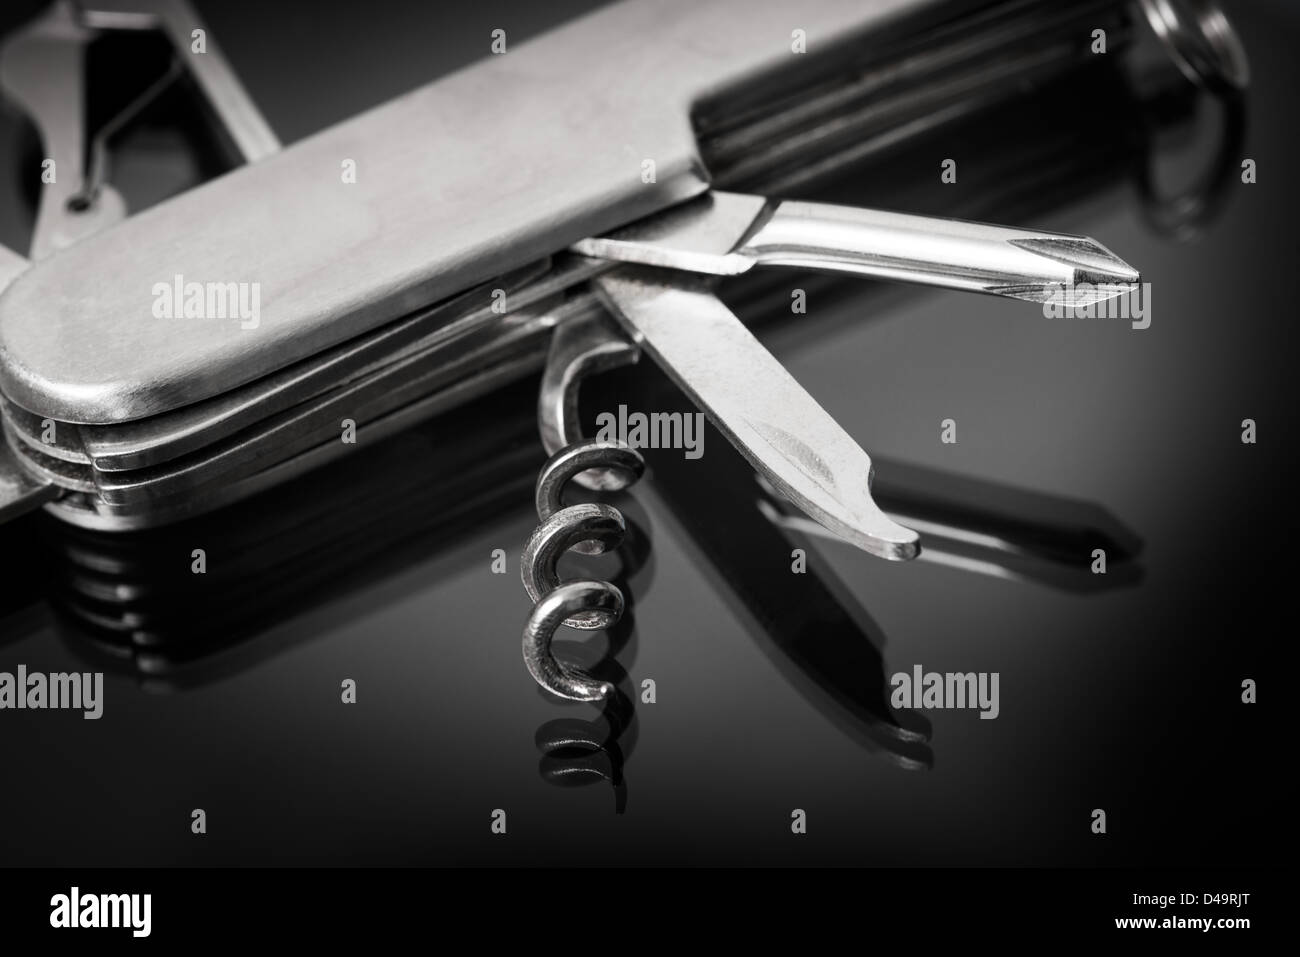 Si tratta di una immagine di un attrezzo multiuso coltello, forbici, cacciavite ecc. Foto Stock